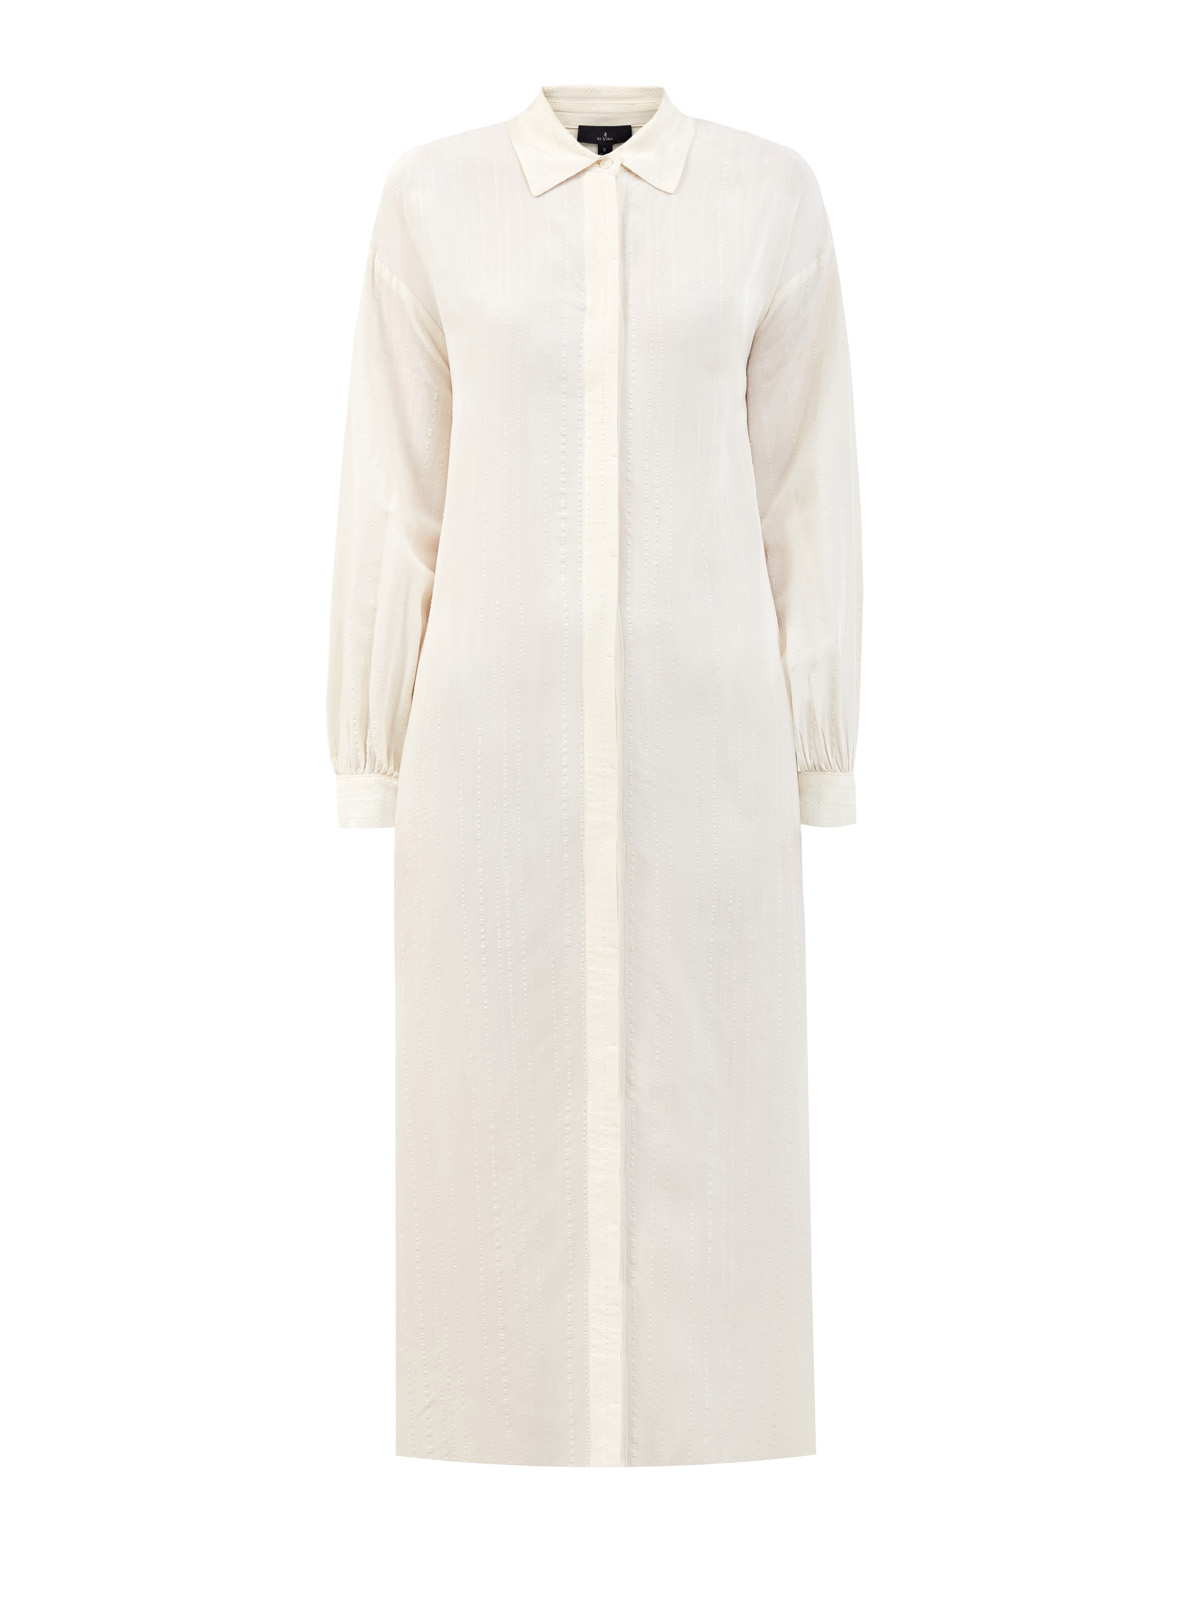 Кремовое платье-рубашка с отложным воротником и прострочкой RE VERA, цвет белый, размер M;XL;S - фото 1